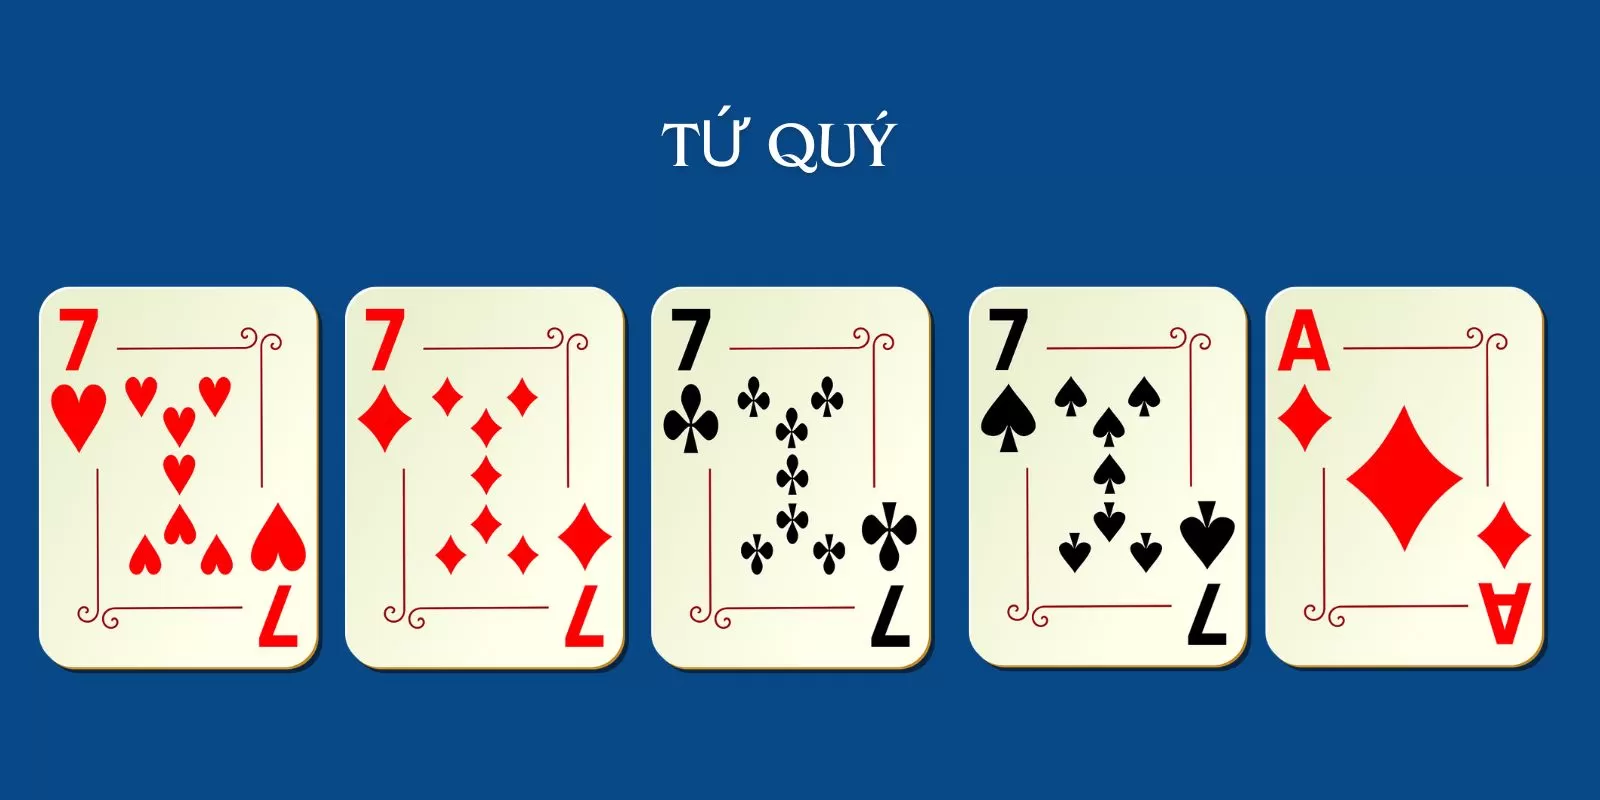 Tứ quý bao gồm bốn lá bài có cùng giá trị và một lá bài bất kỳ khác.